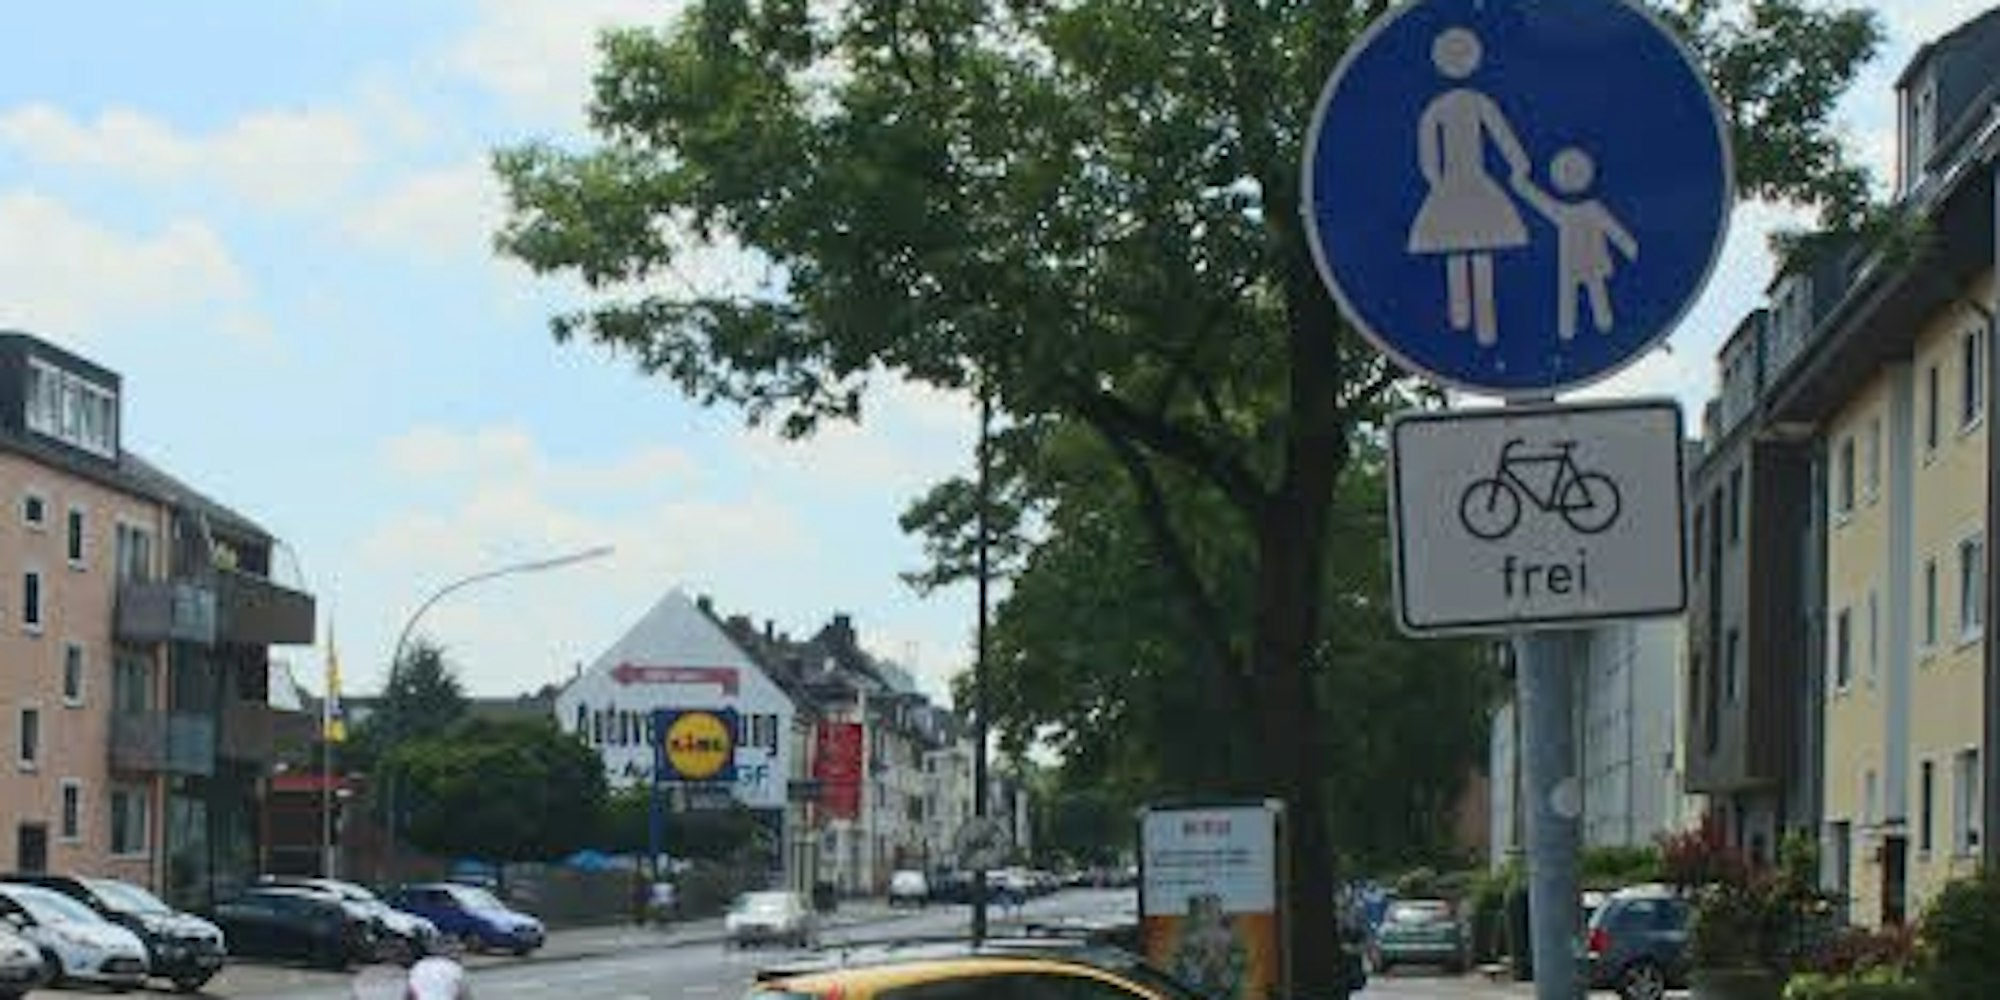 Der frühere Radweg ist nun ein Fußweg mit „Radfahrer frei“-Regelung: Radler können, müssen ihn aber nicht benutzen.